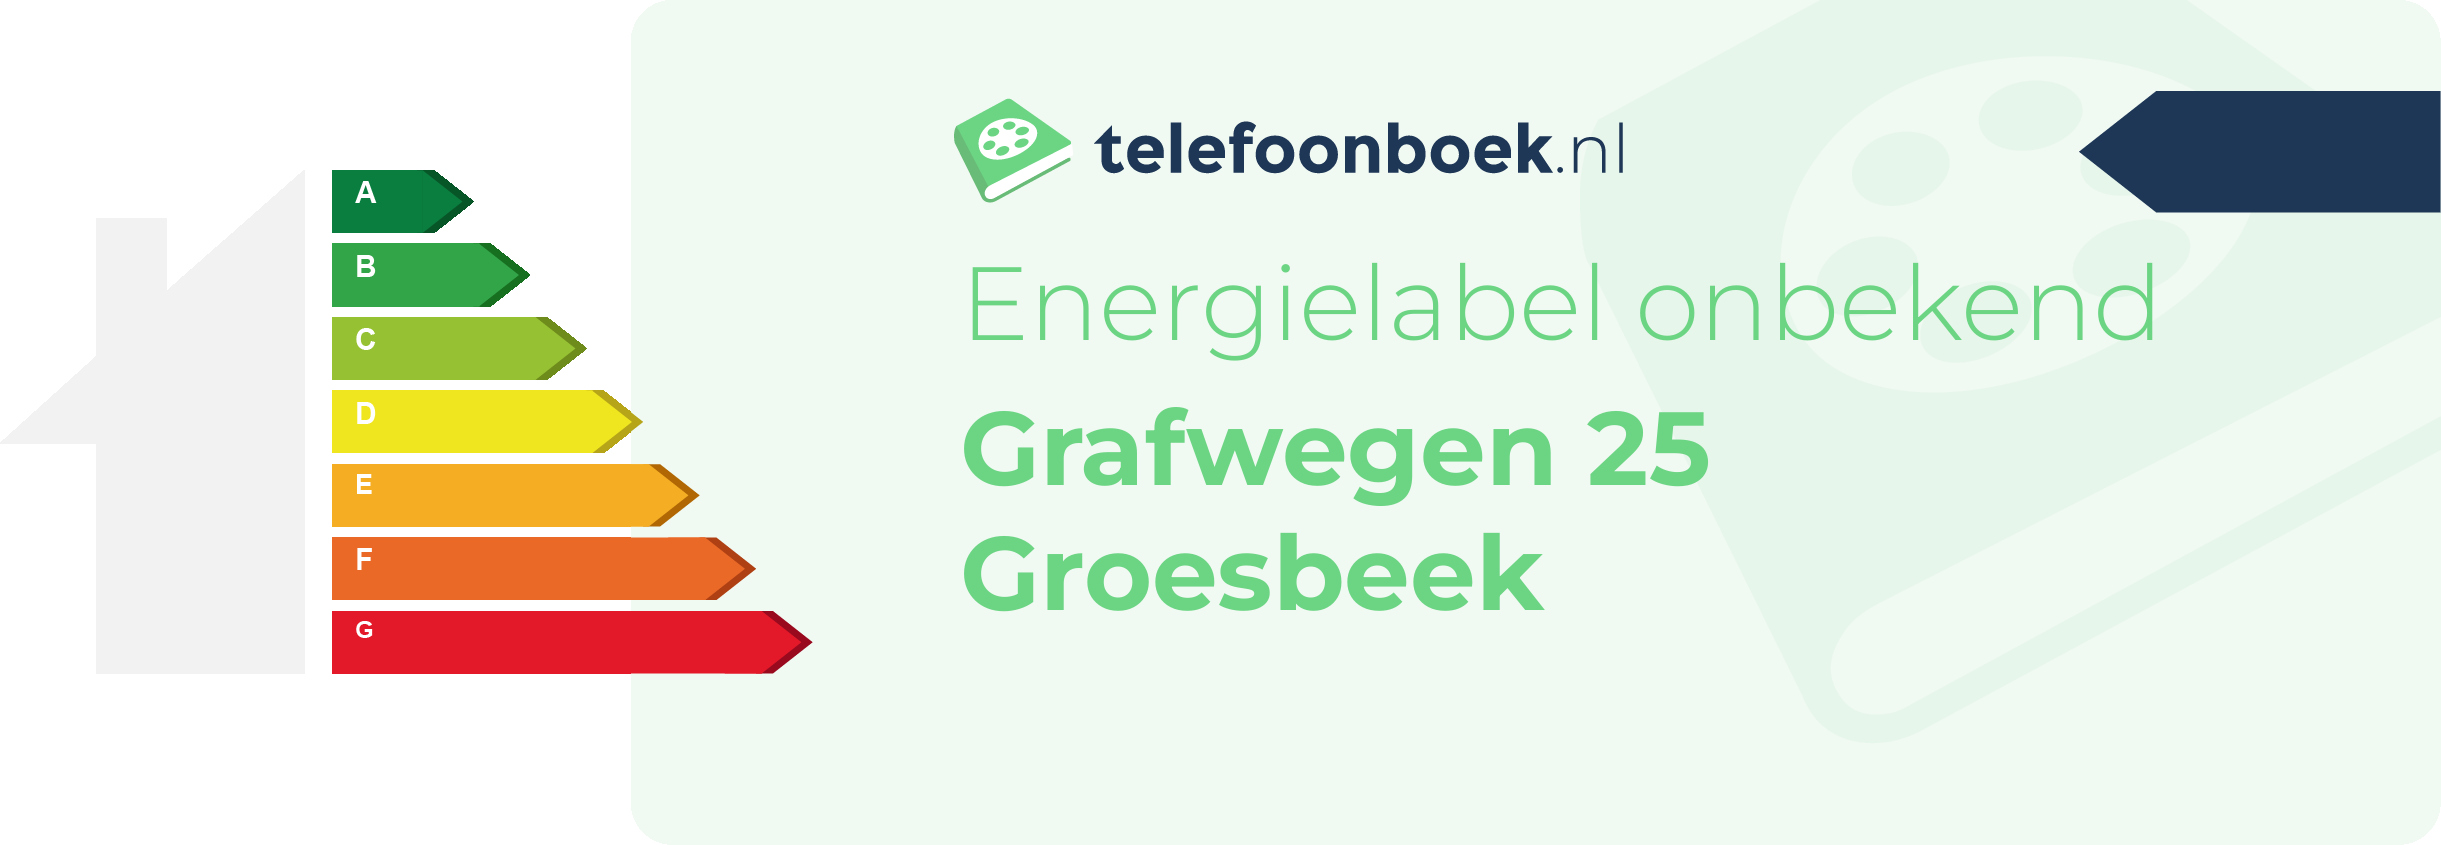 Energielabel Grafwegen 25 Groesbeek